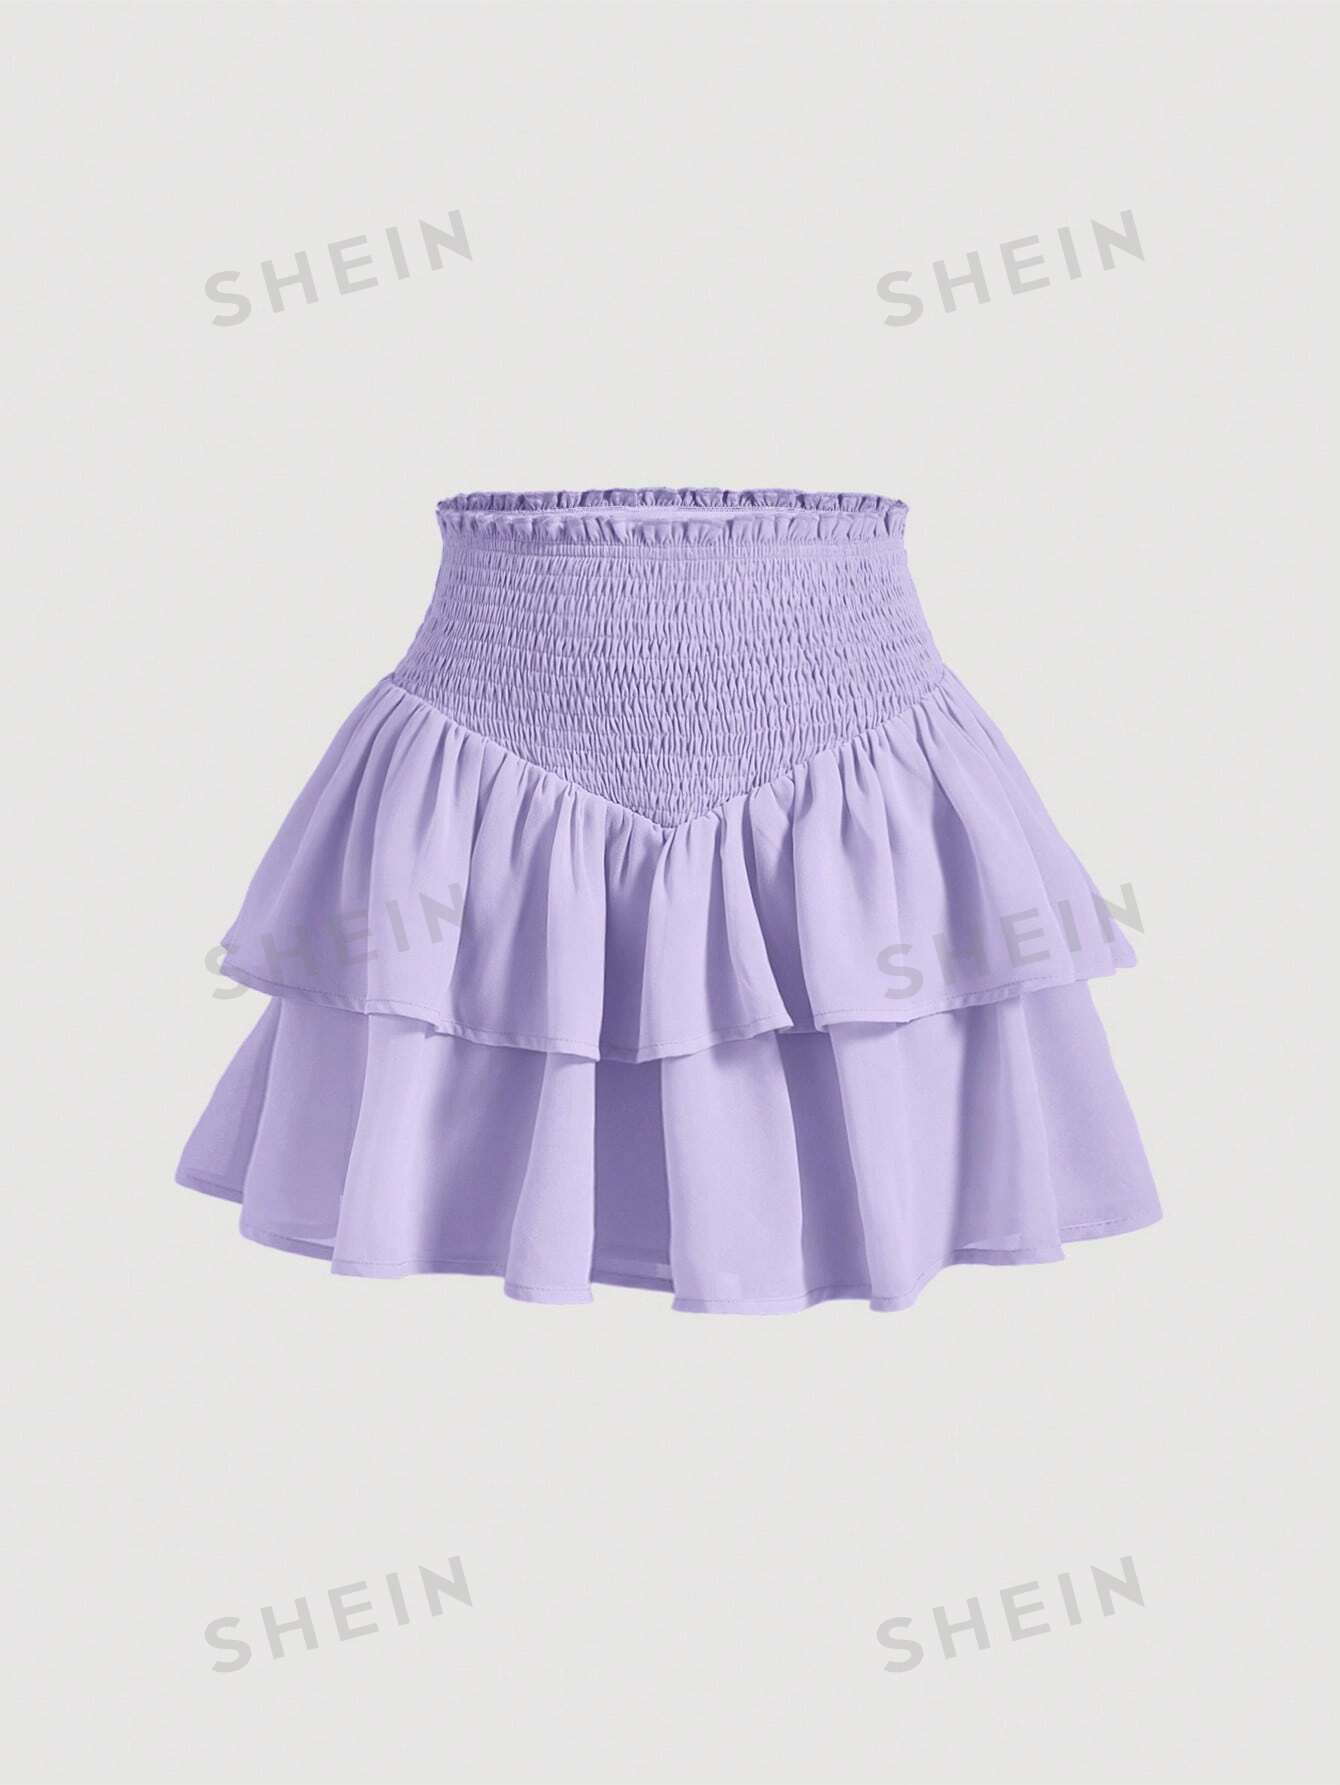 SHEIN MOD SHEIN MOD женская двухслойная мини-юбка с асимметричным подолом и рюшами и присборенной талией, фиолетовый shein mod белая кружевная декорированная асимметричная юбка с рюшами по подолу белый